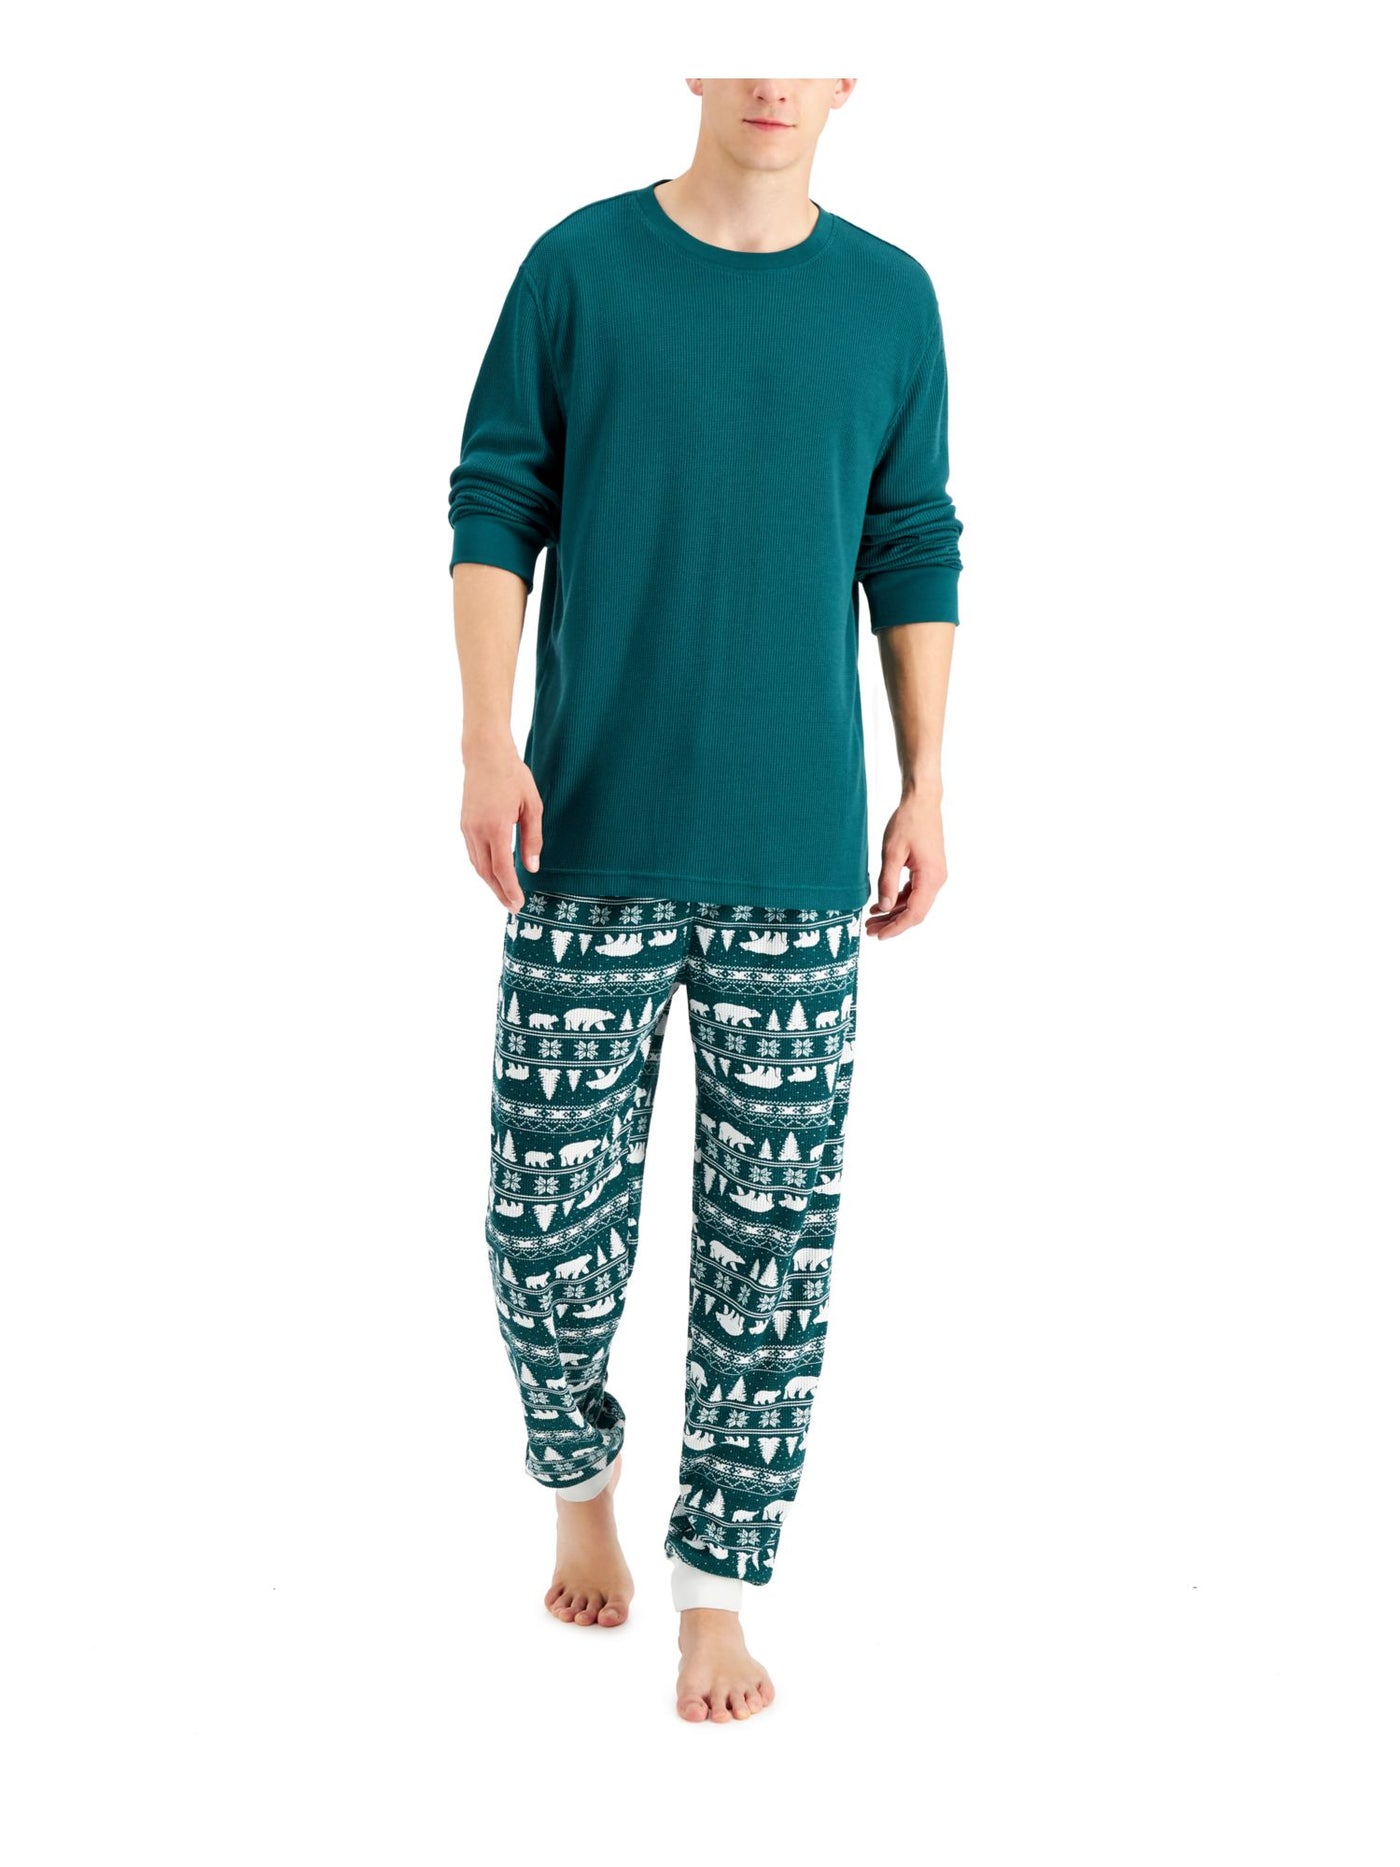 FAMILY PJs Mens Bear Fair Isle Green Textured Long Sleeve T-Shirt Top Cuffed Pants Pajamas XL